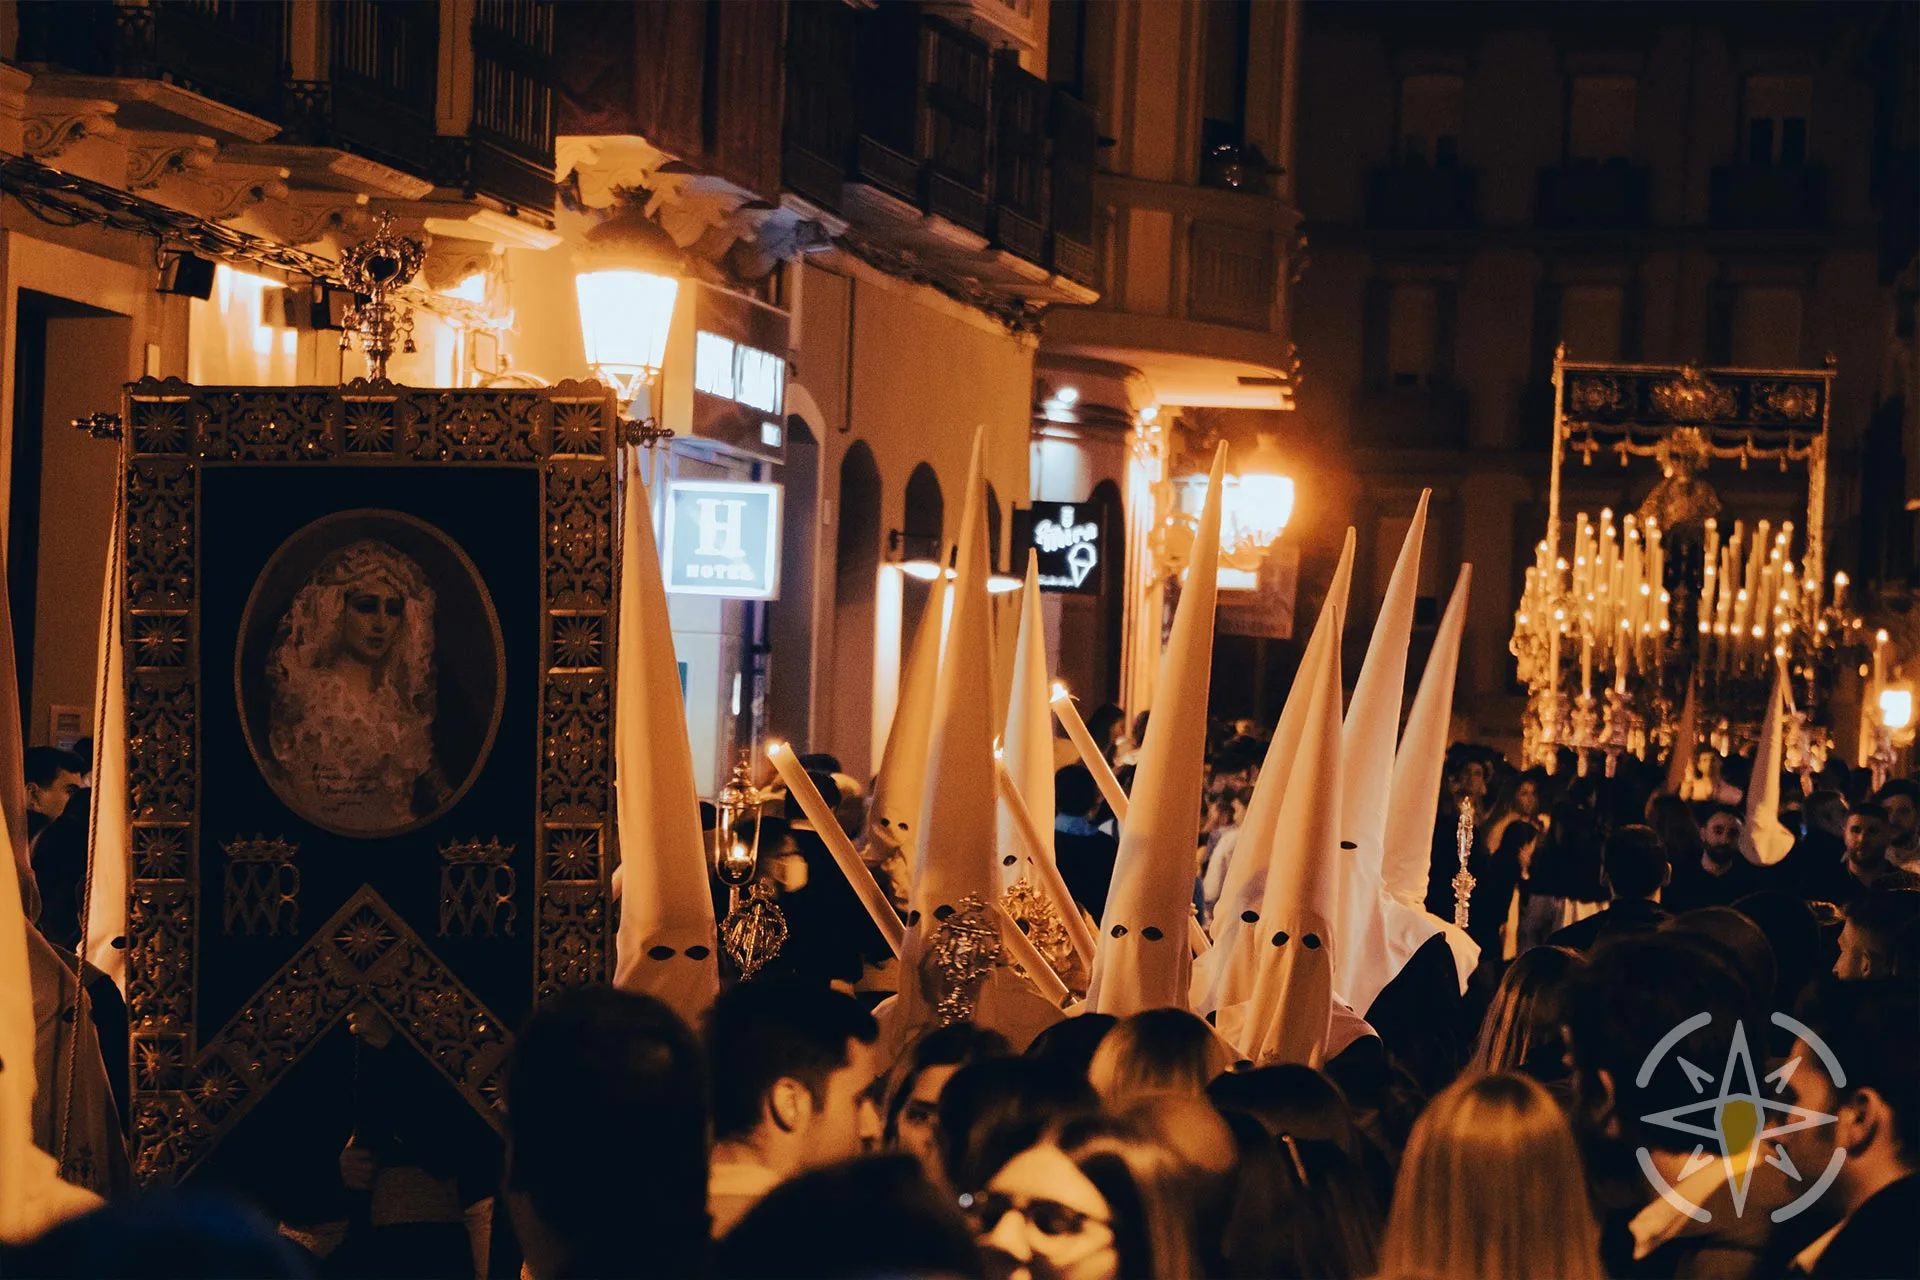 Experiencing SEMANA SANTA in SPAIN, Holy Week in MALAGA, SPAIN 🇪🇸